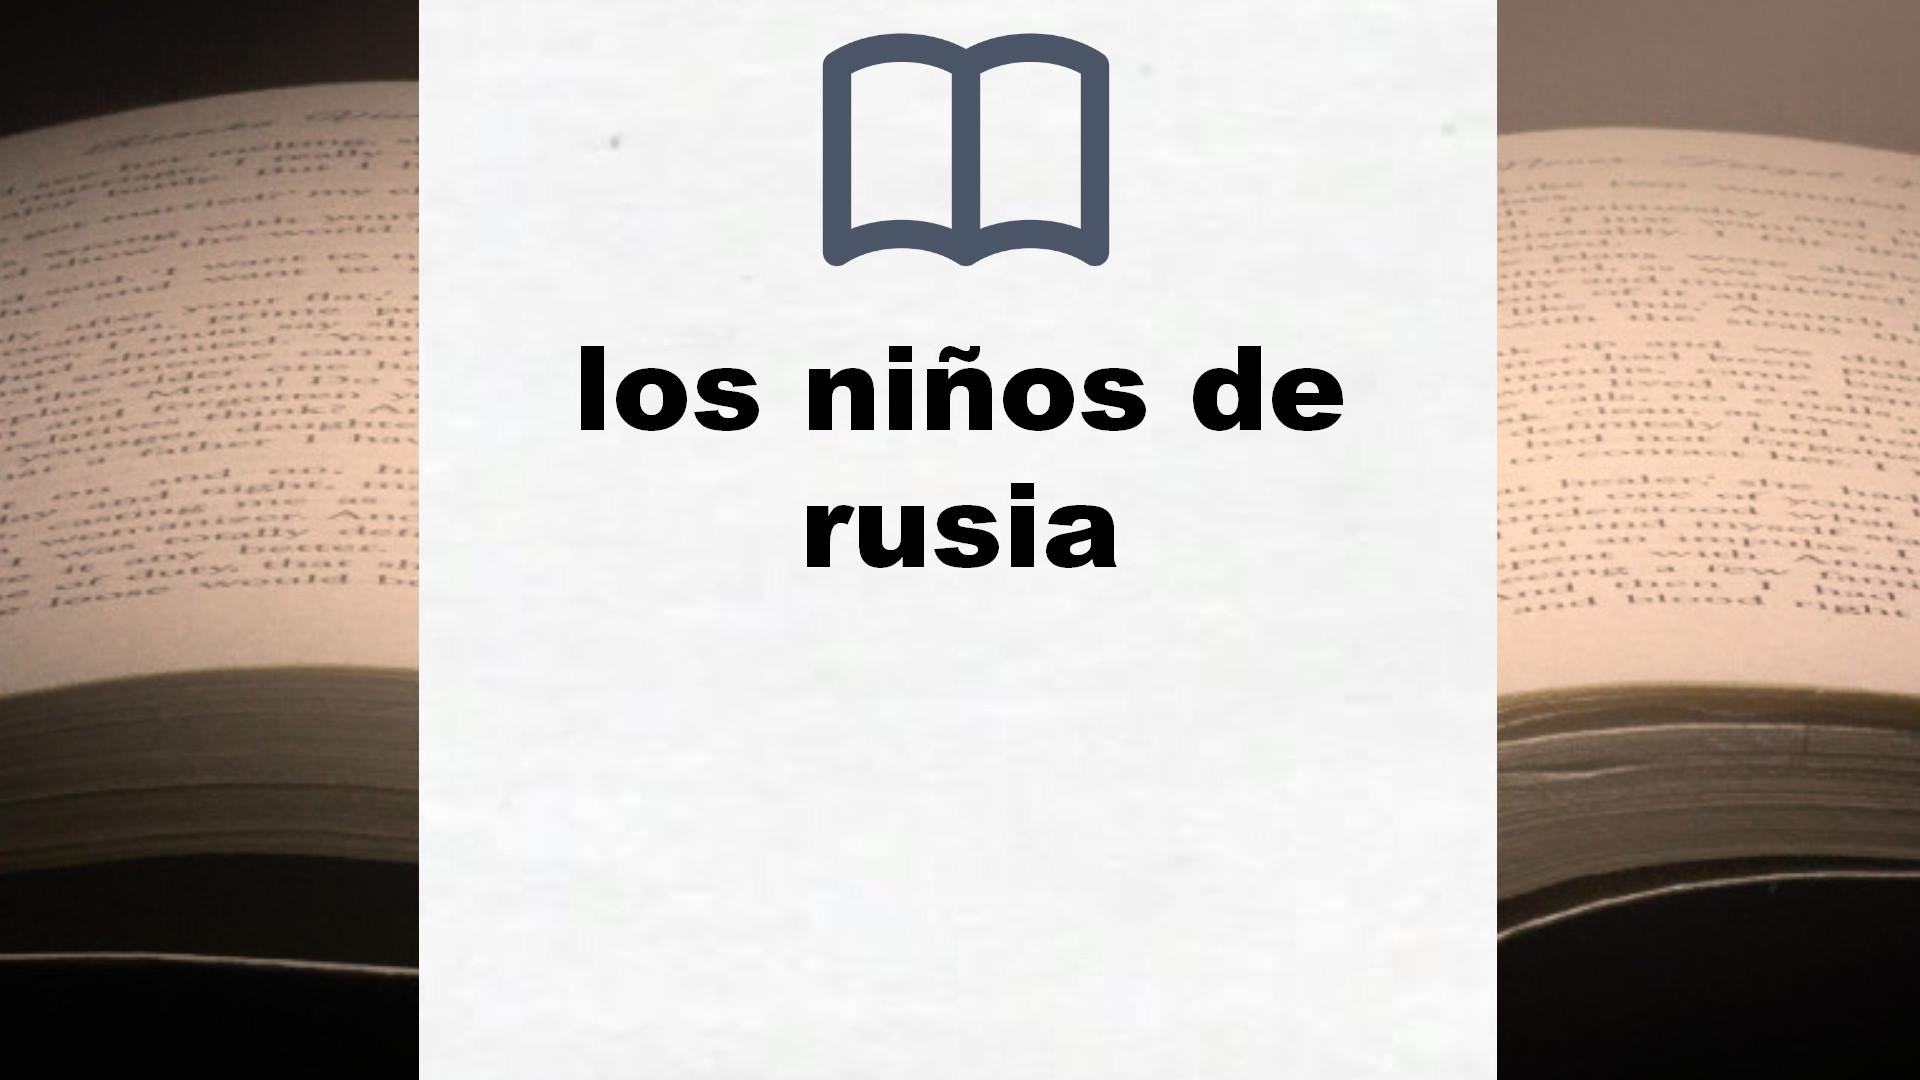 Libros sobre los niños de rusia